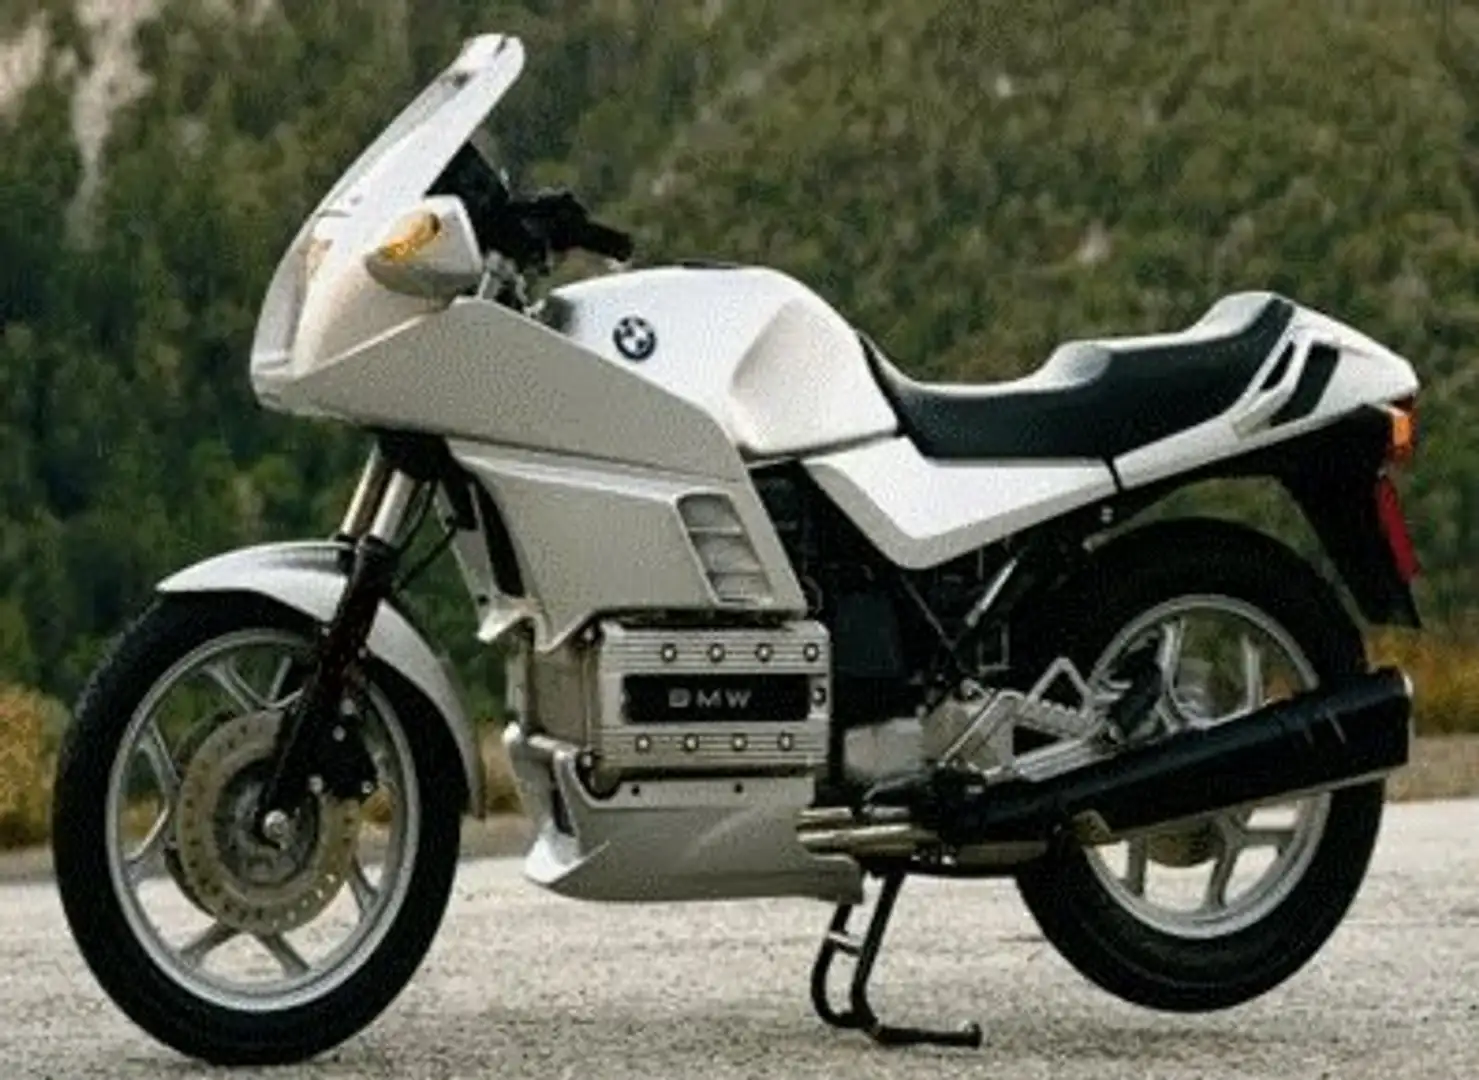 BMW K 100 RS 16 v White - 1